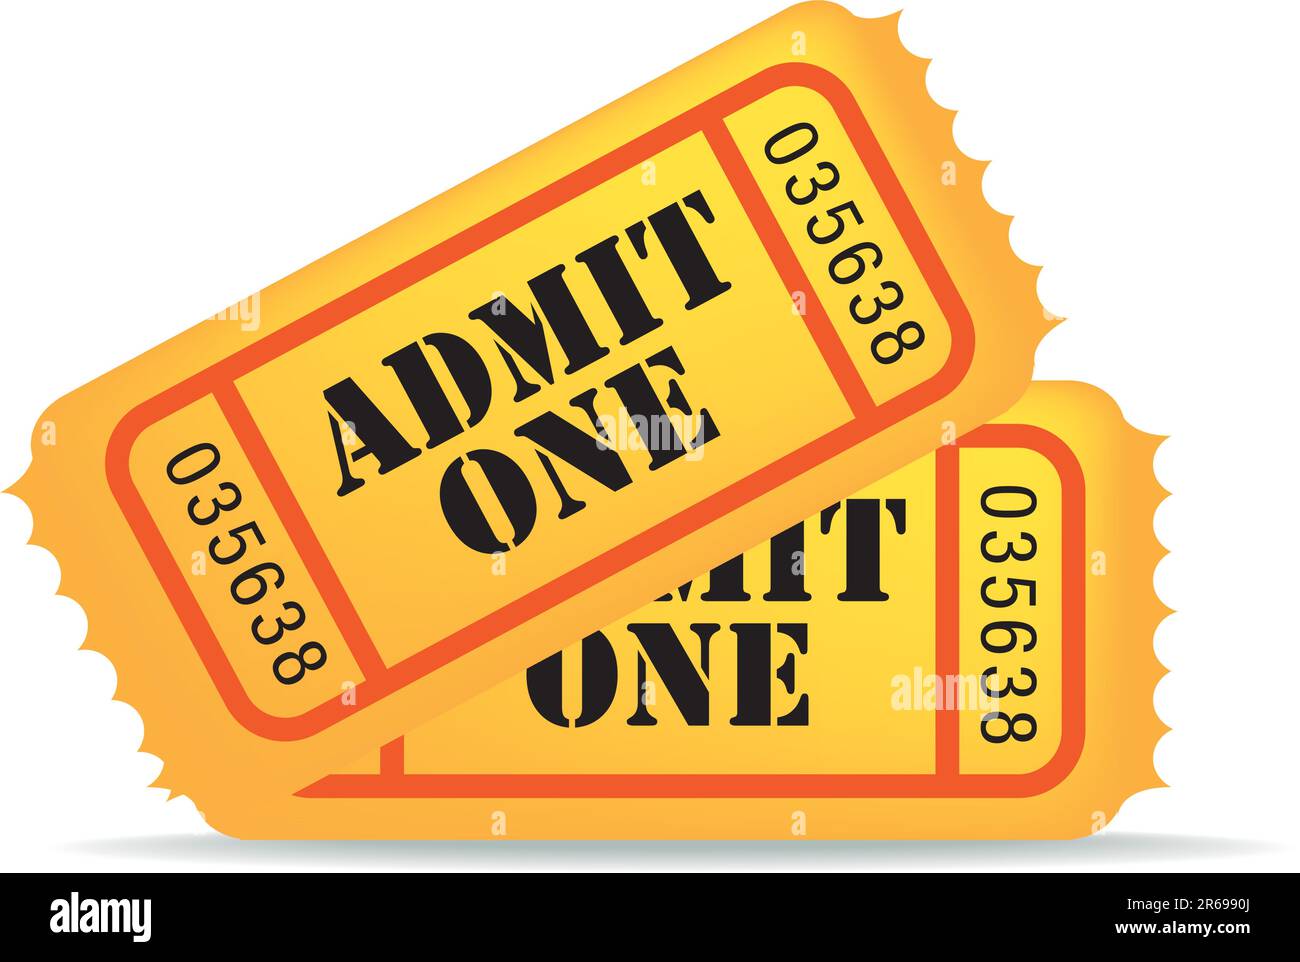 Illustrazione di un biglietto per il cinema su sfondo bianco Illustrazione Vettoriale